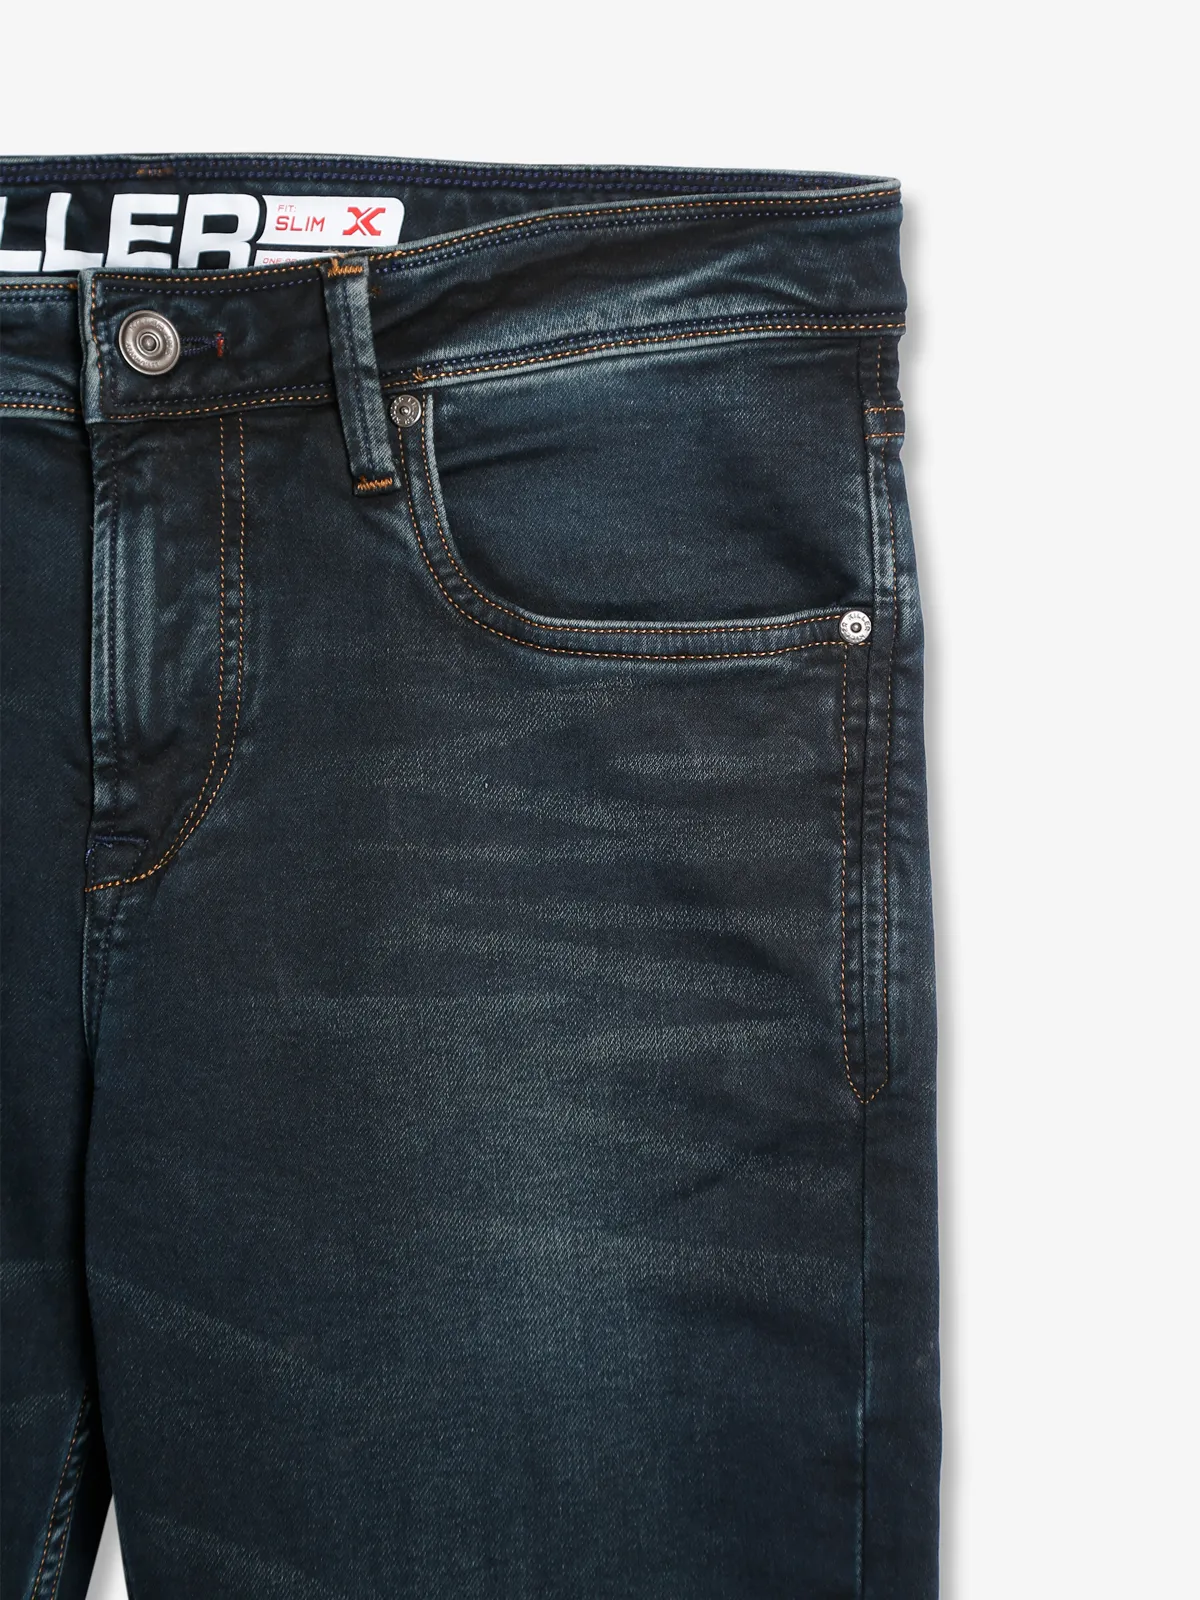 Killer washed dark grey slim fit jeans